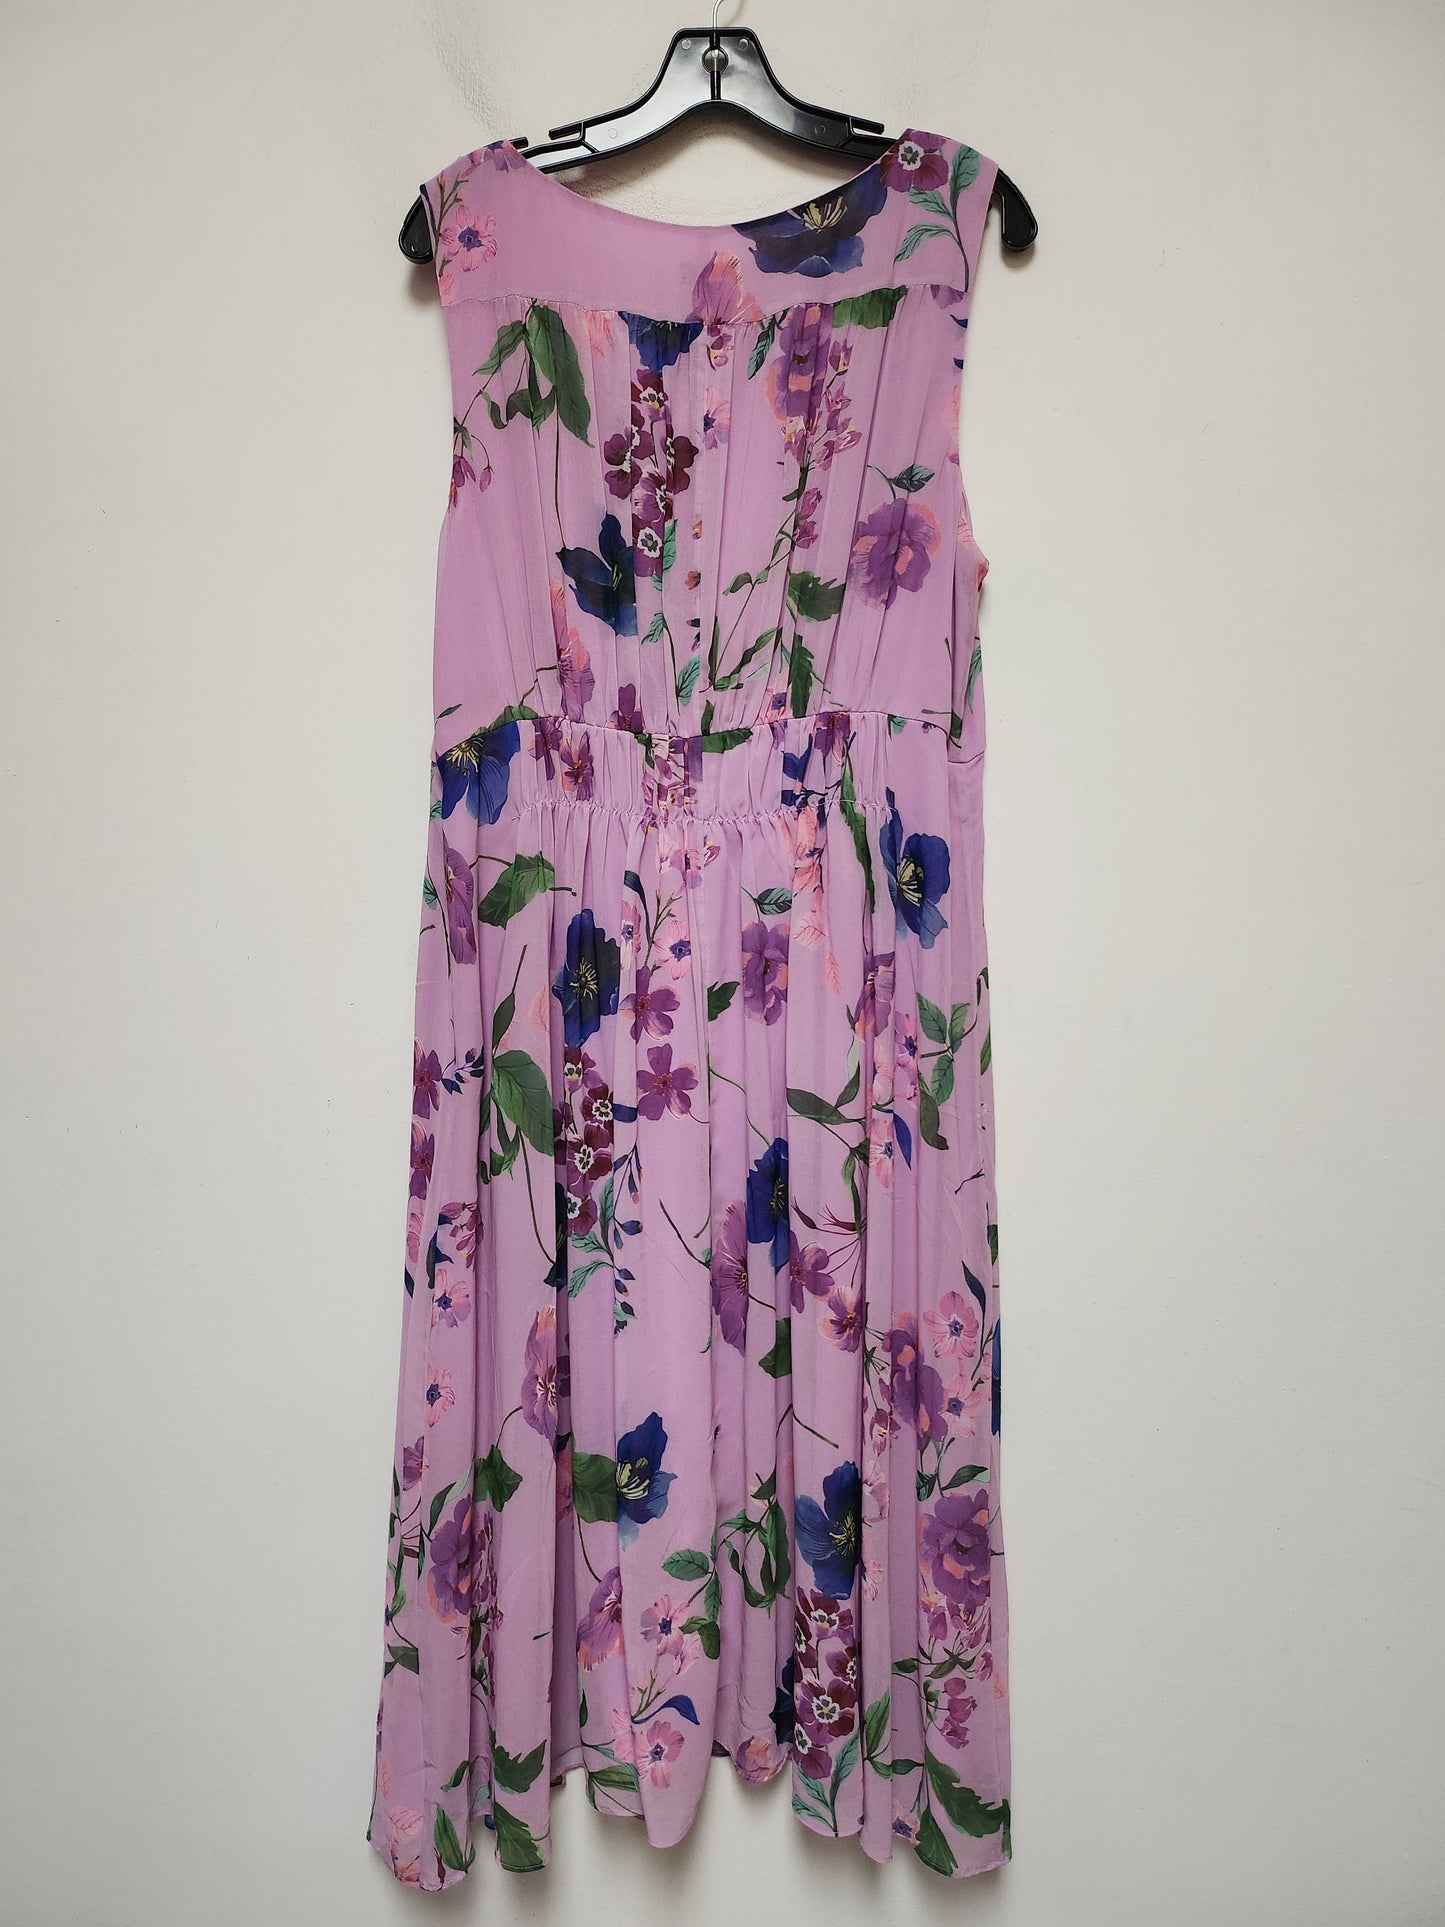 Floral Print Dress Casual Midi Talbots, Size Xl